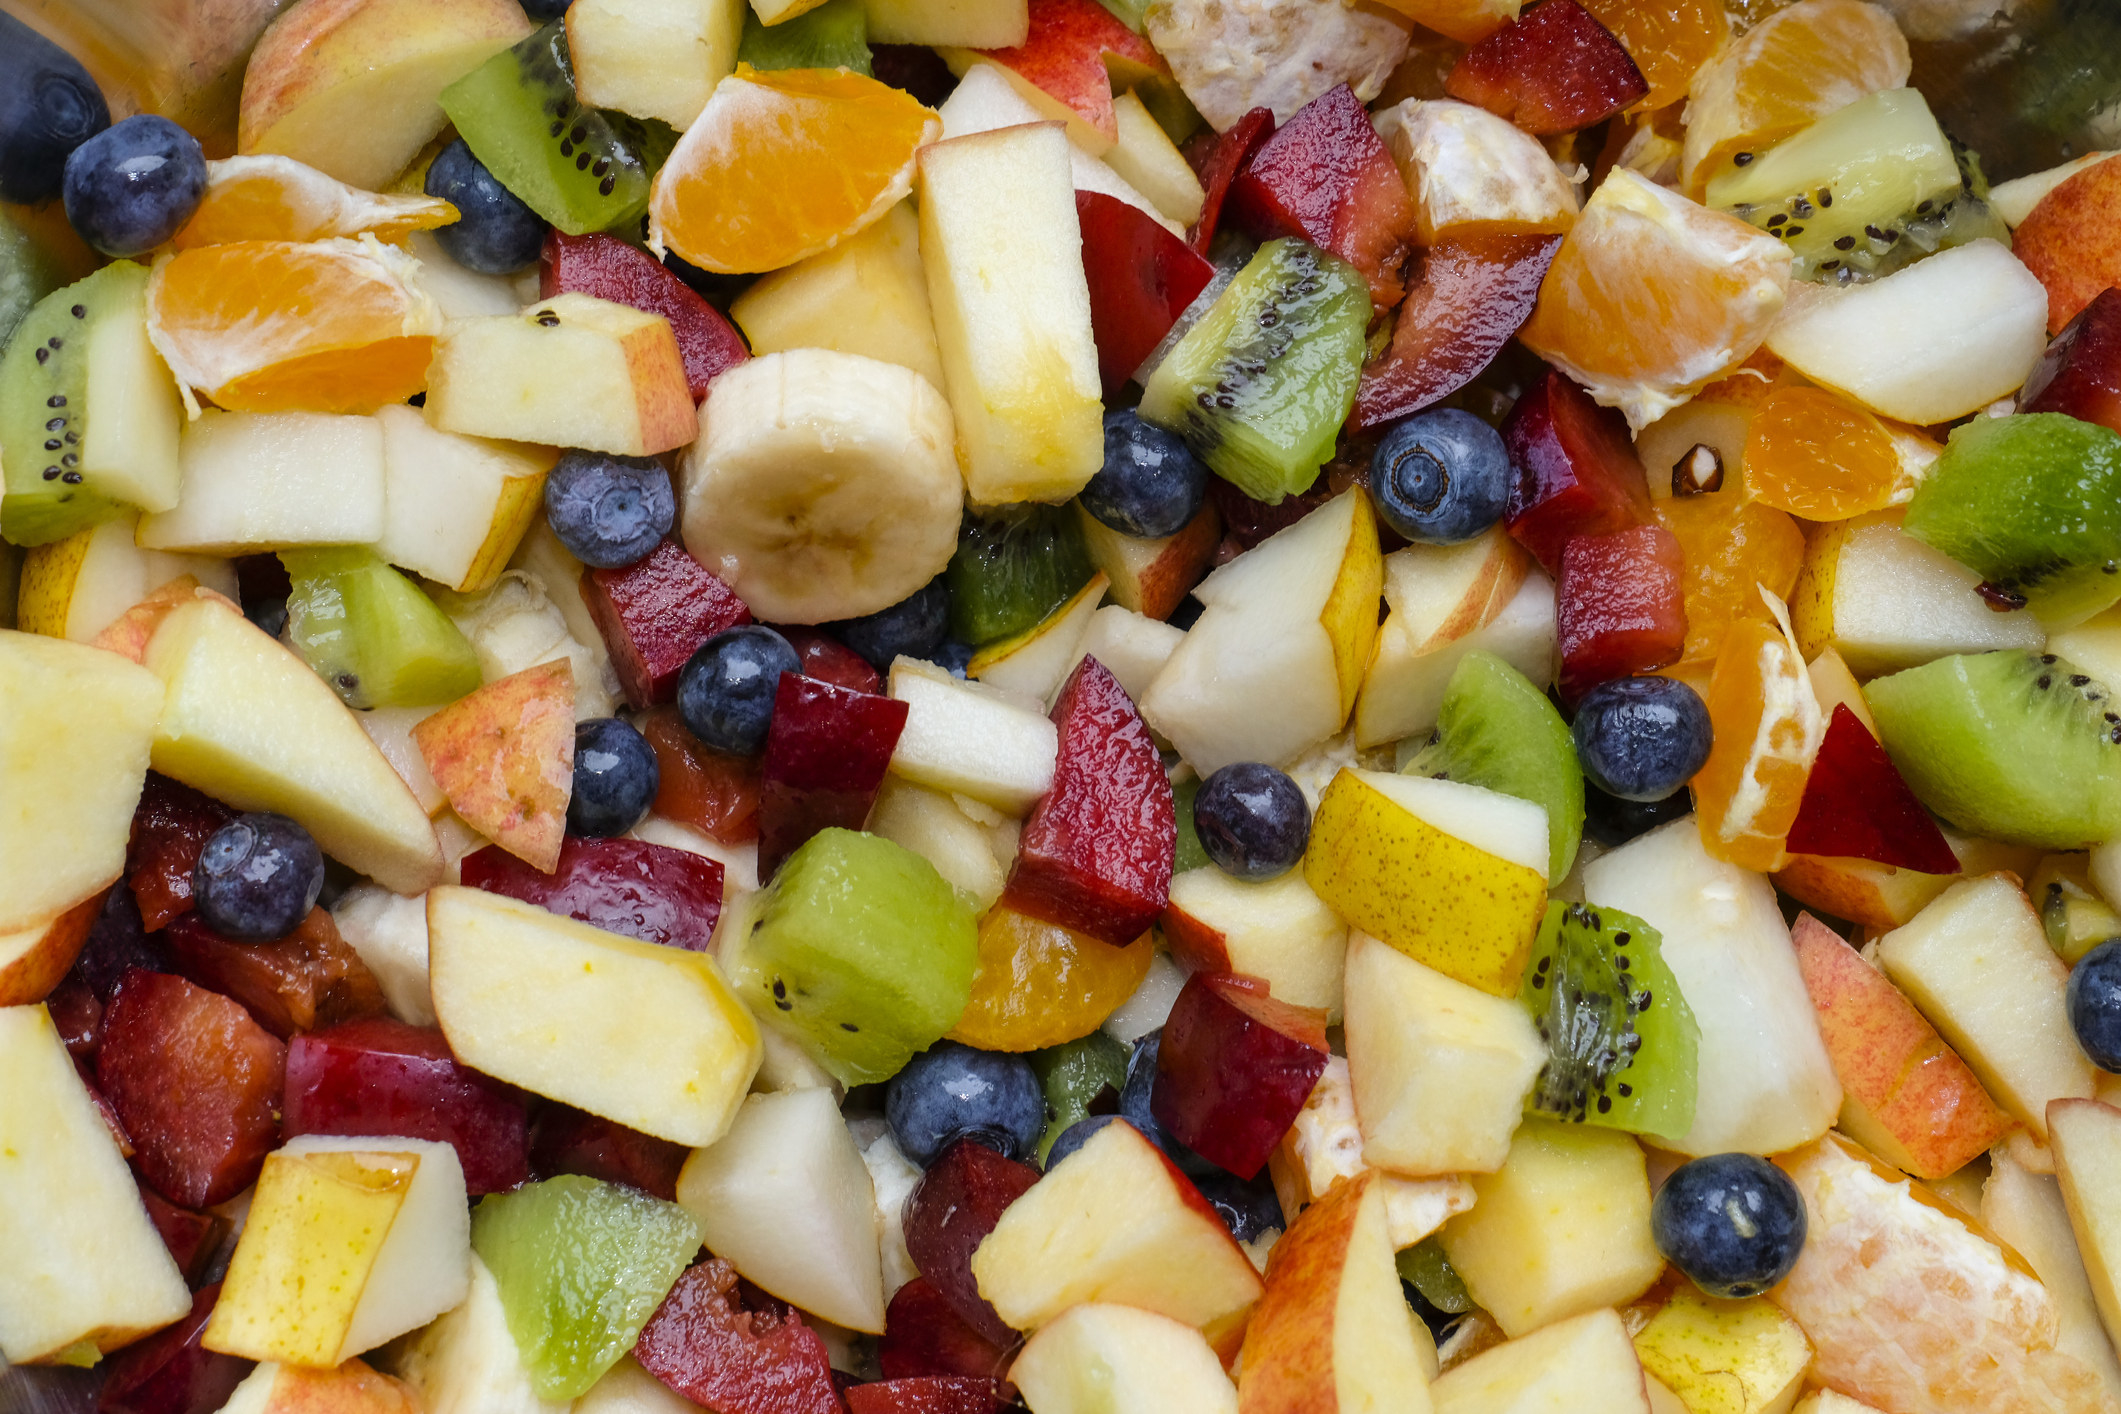 A close-up of fruit salad.